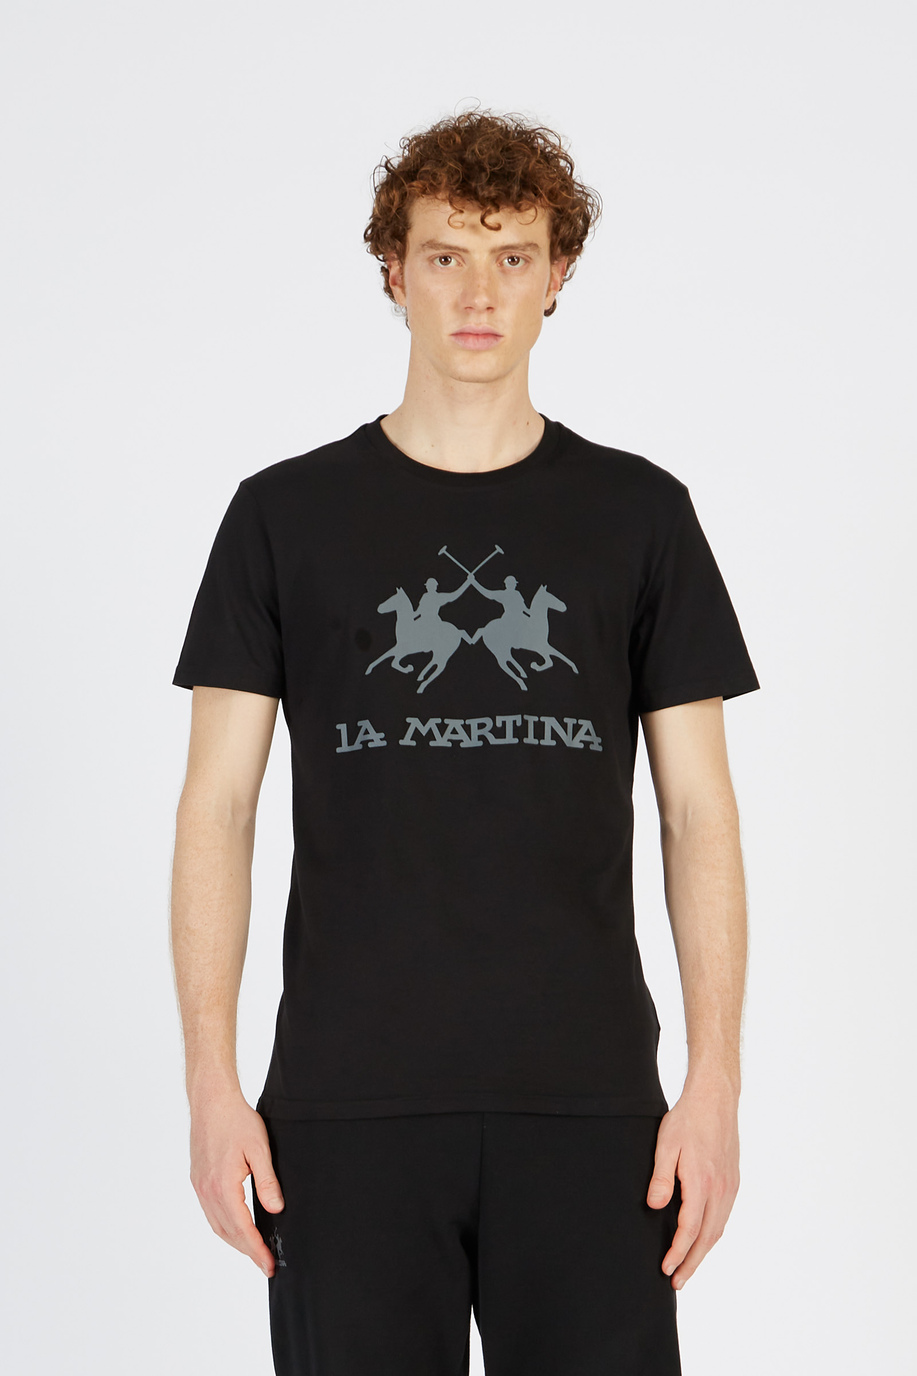 T-shirts uomo regular fit - Moreno - Regali monogrammati per lui | La Martina - Official Online Shop